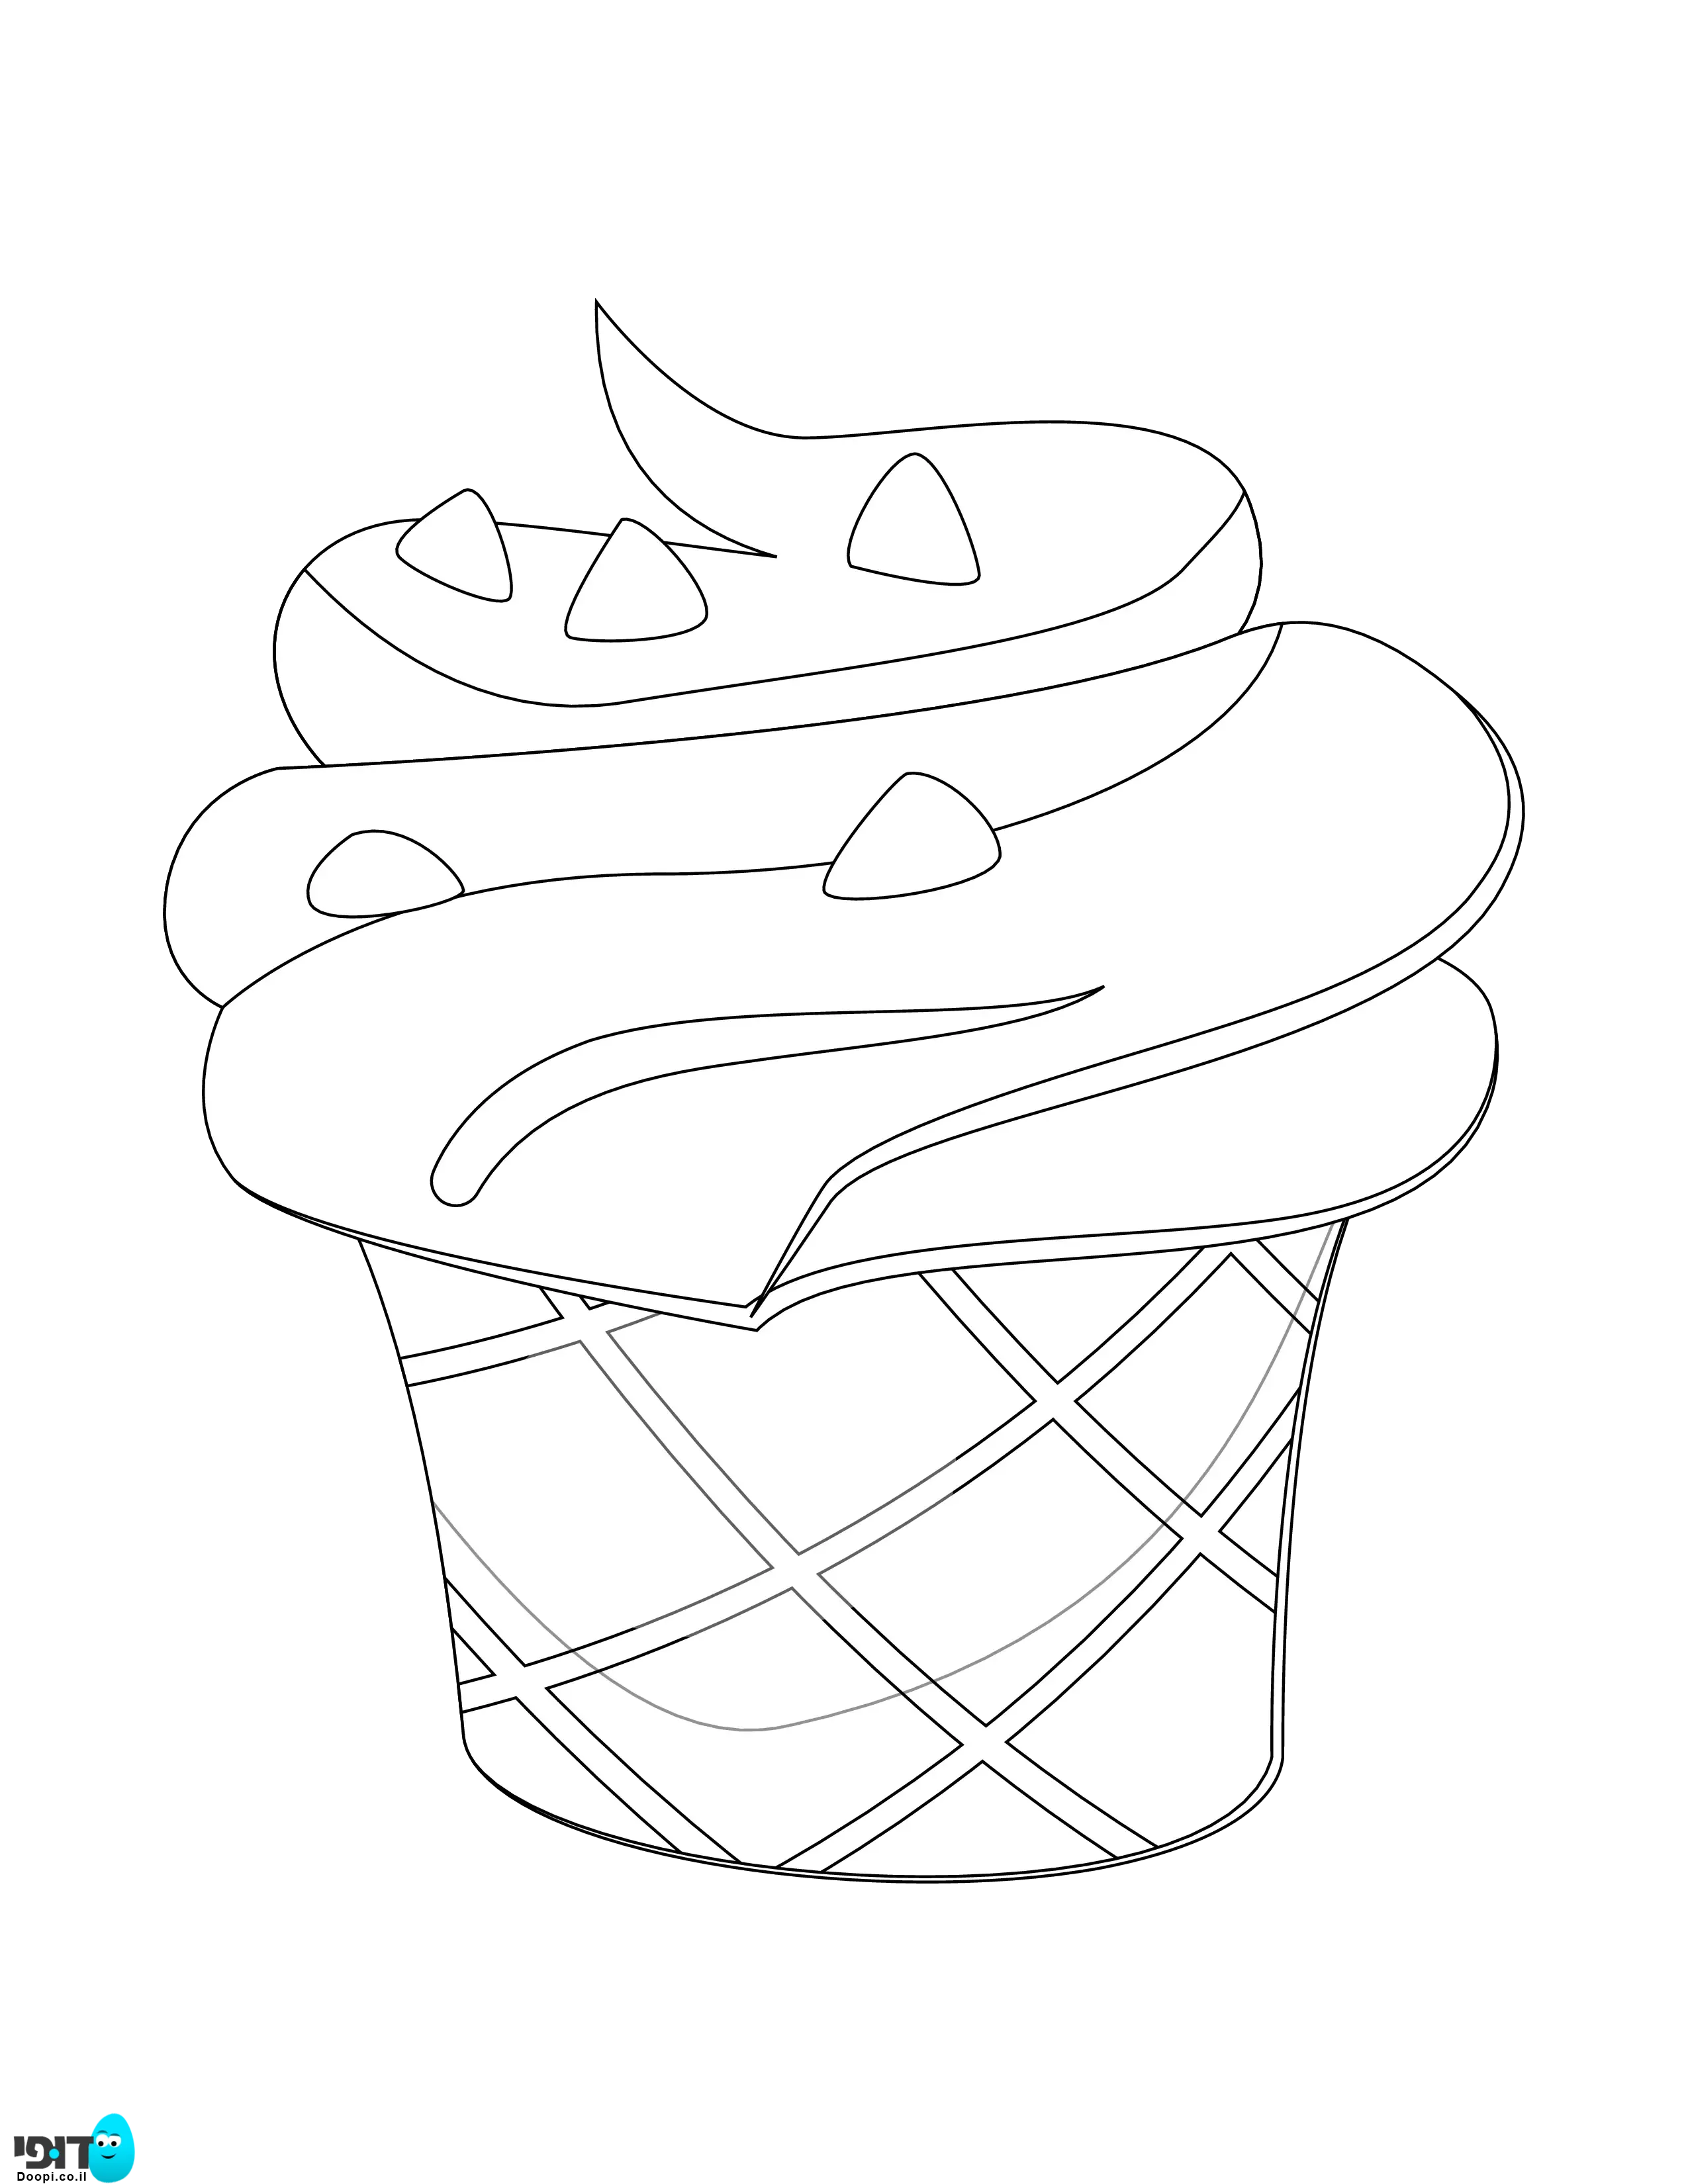 דף צביעה גלידה עם פצפוצים